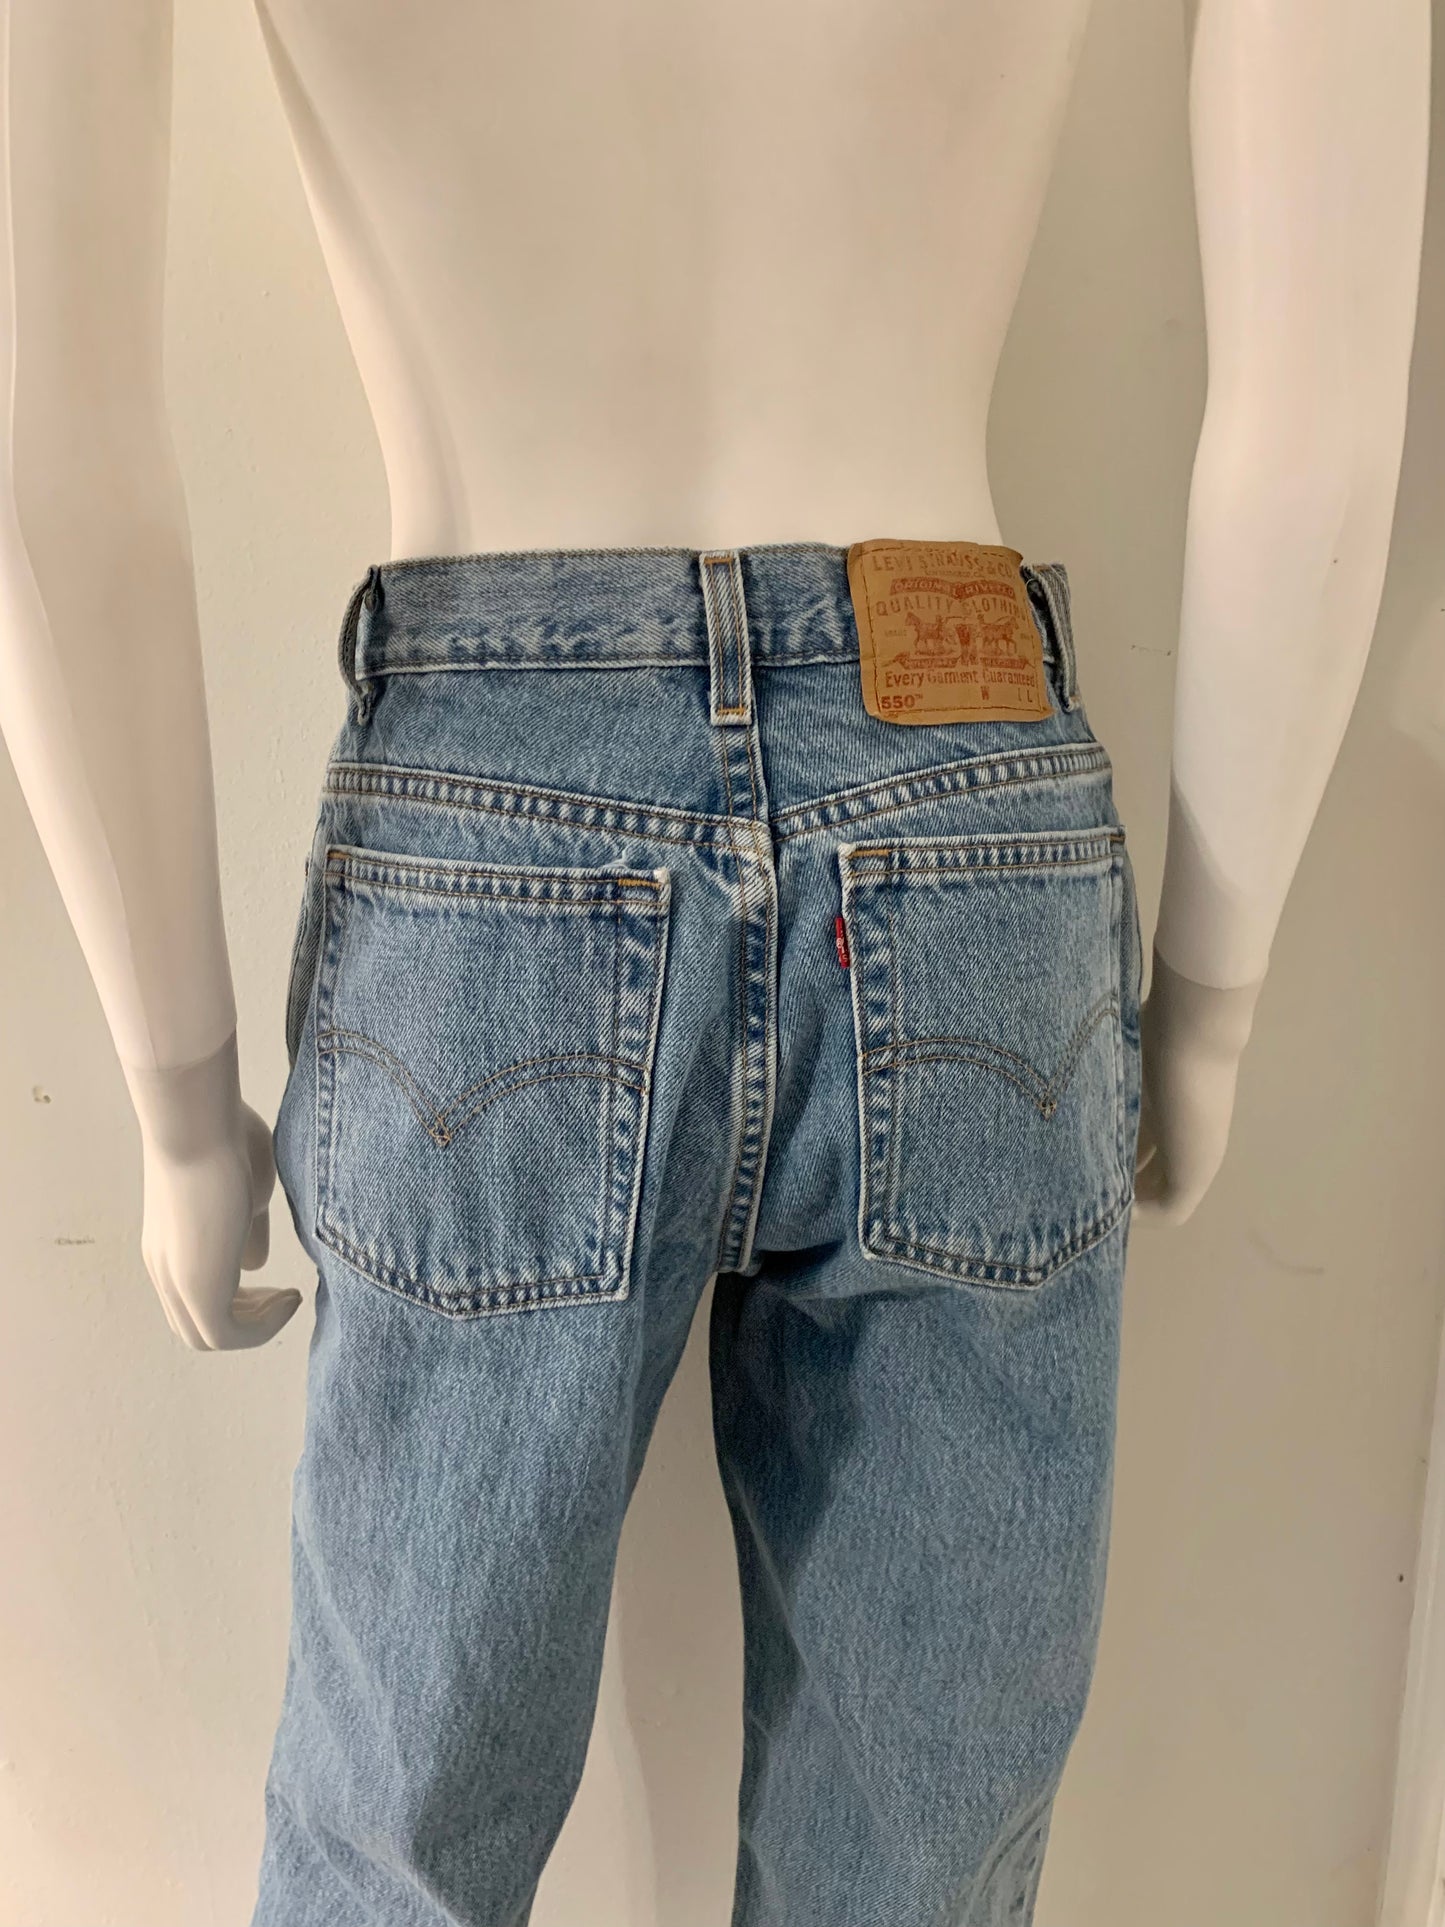 Levi’s 550 Vintage Jeans